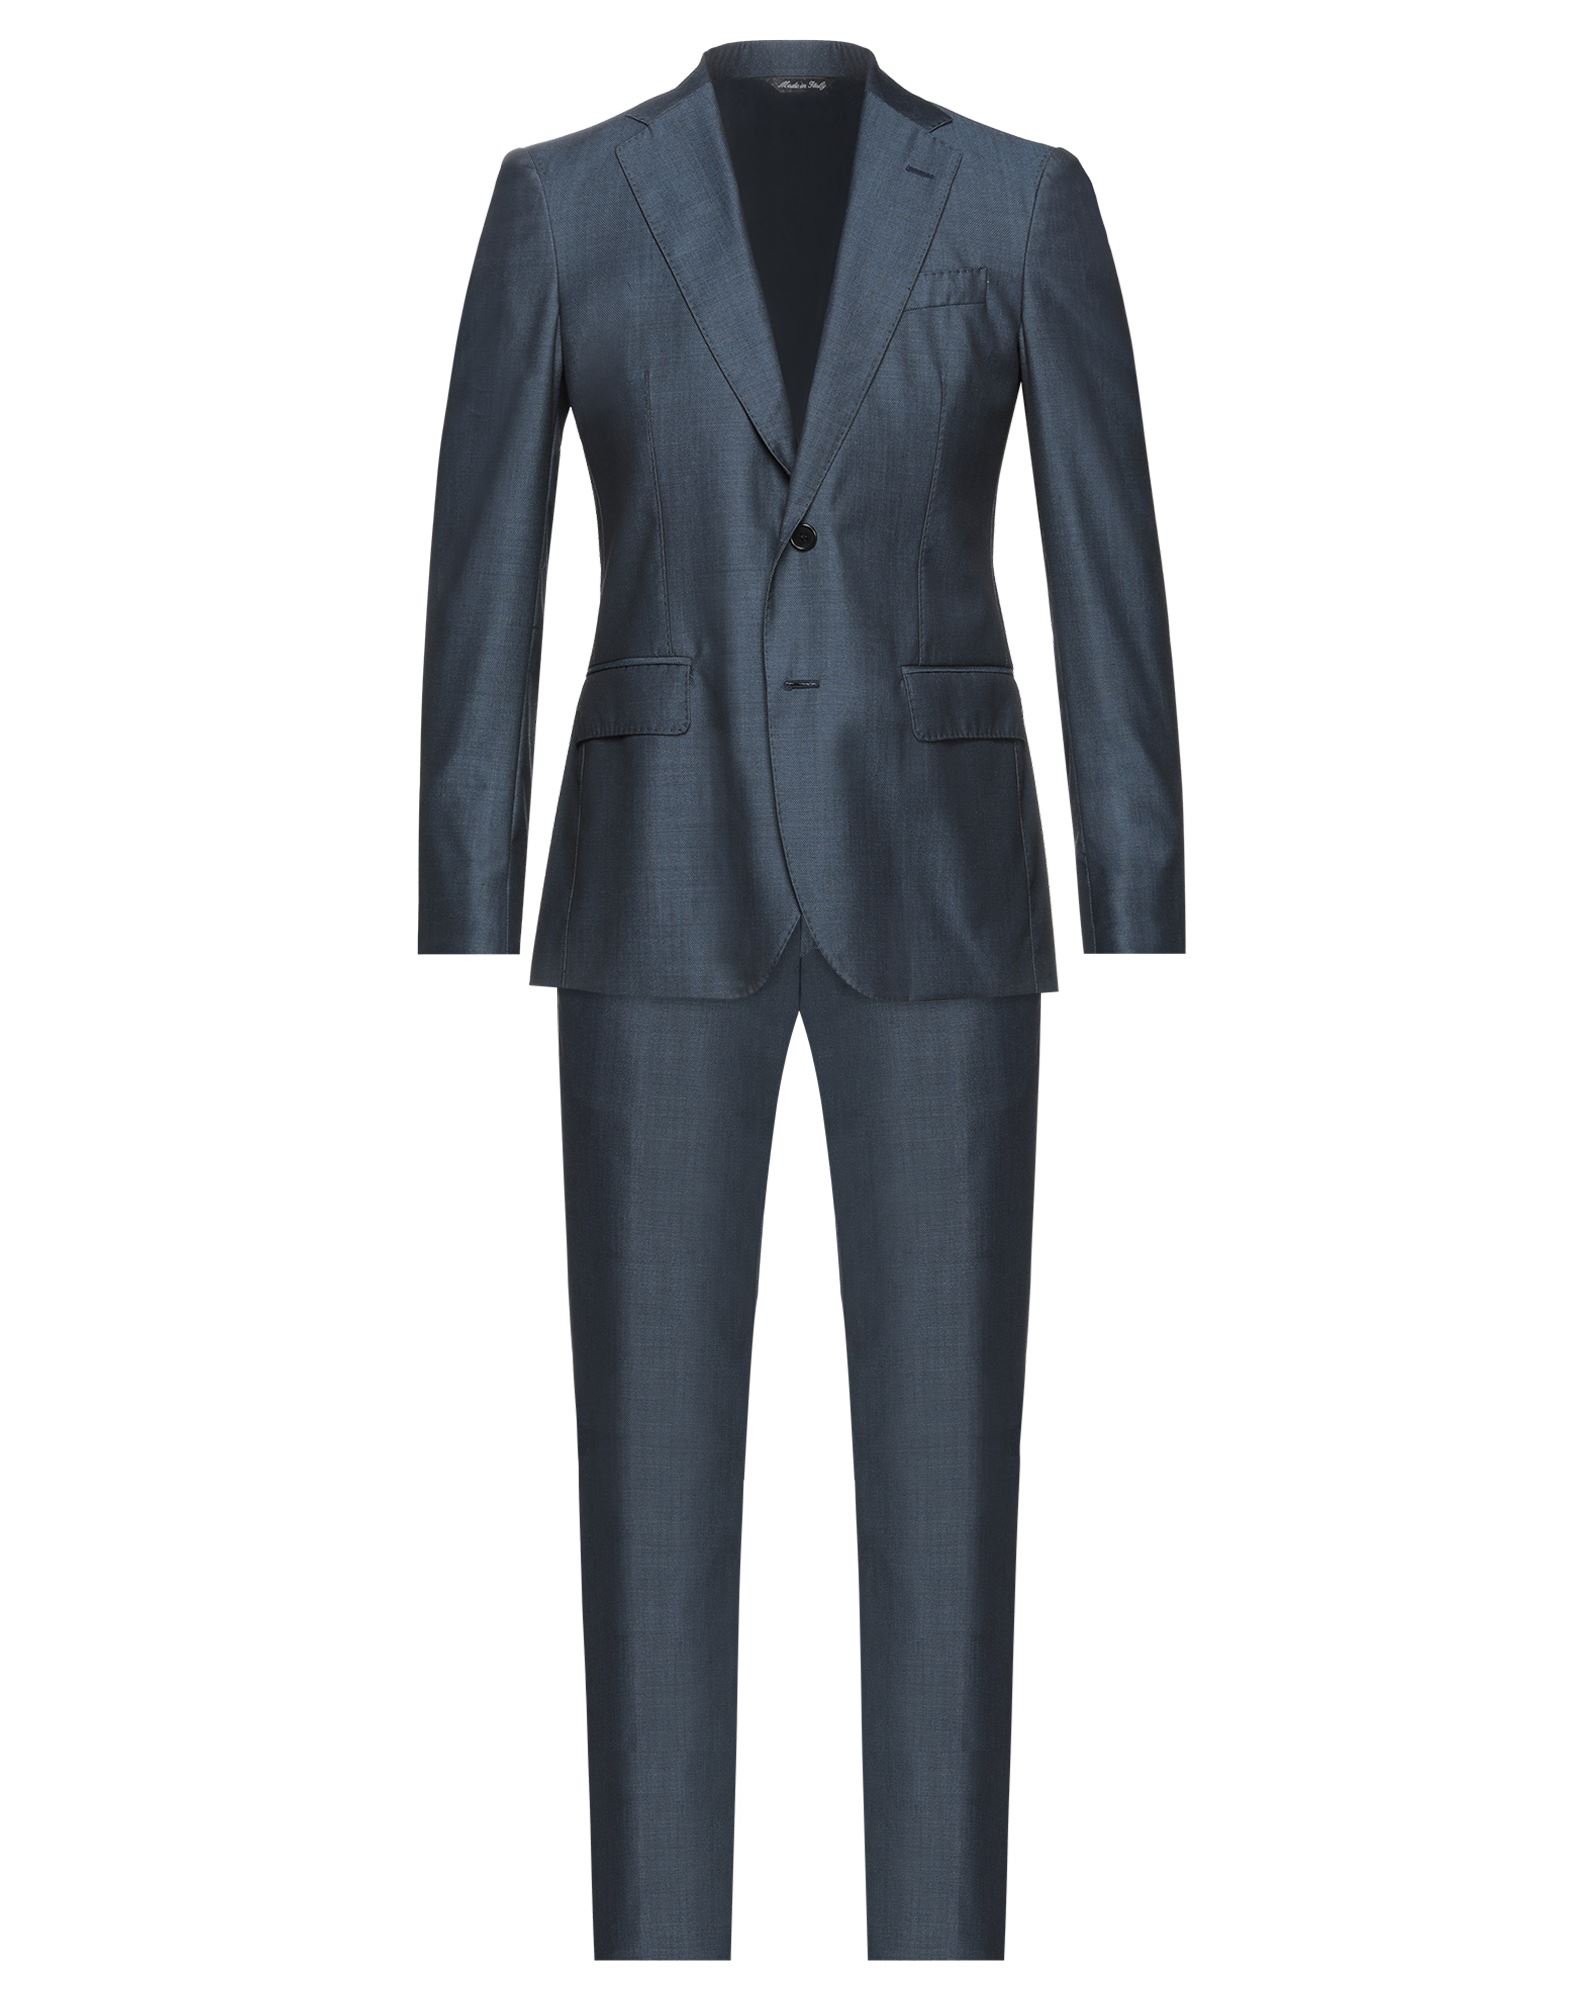 GAETANO AIELLO Suits